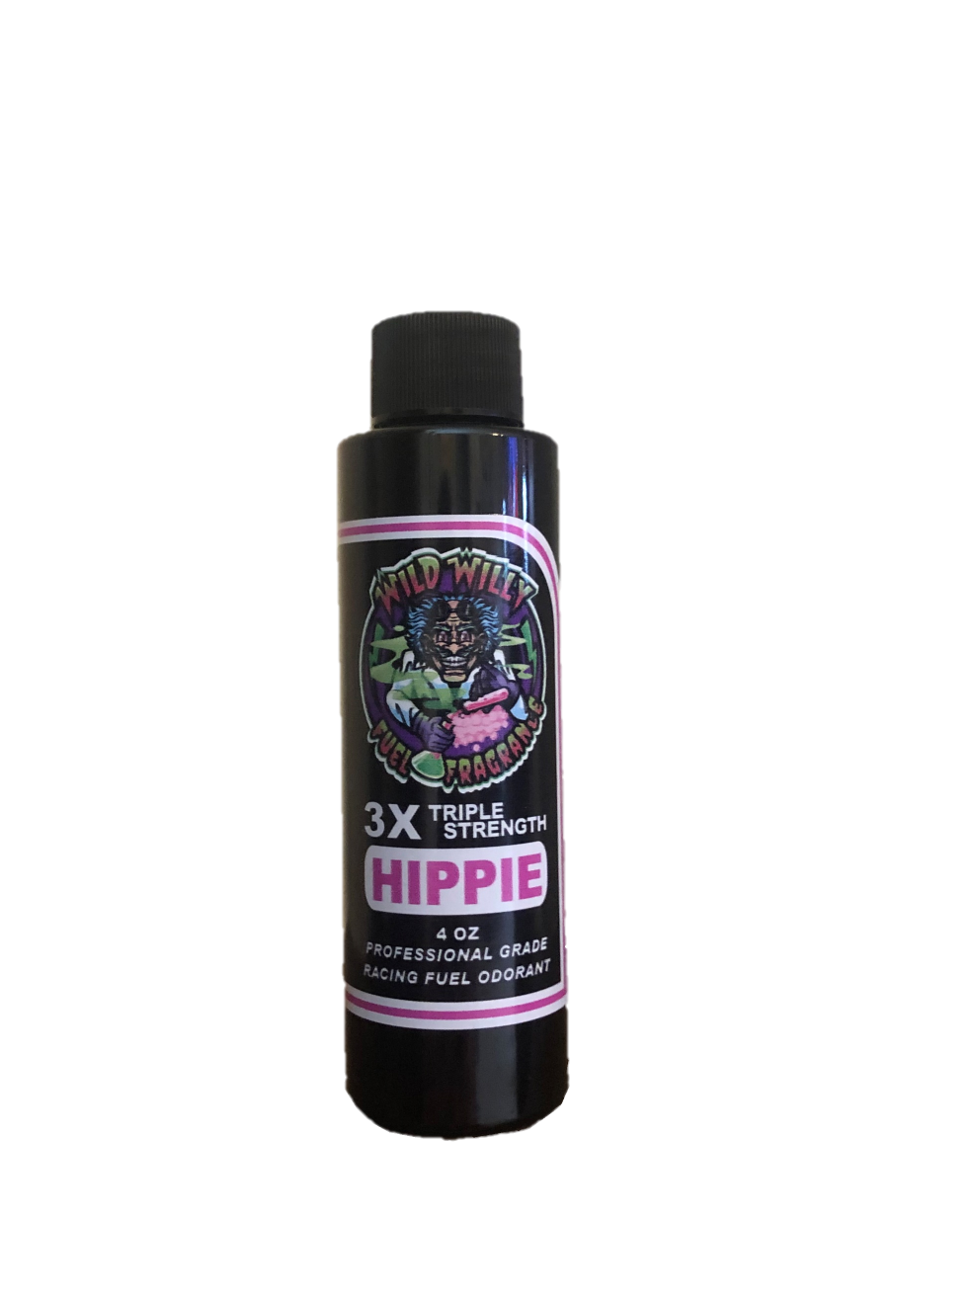 Hippie - Wild Willy Fuel Fragrance - 3X Triple Strength!